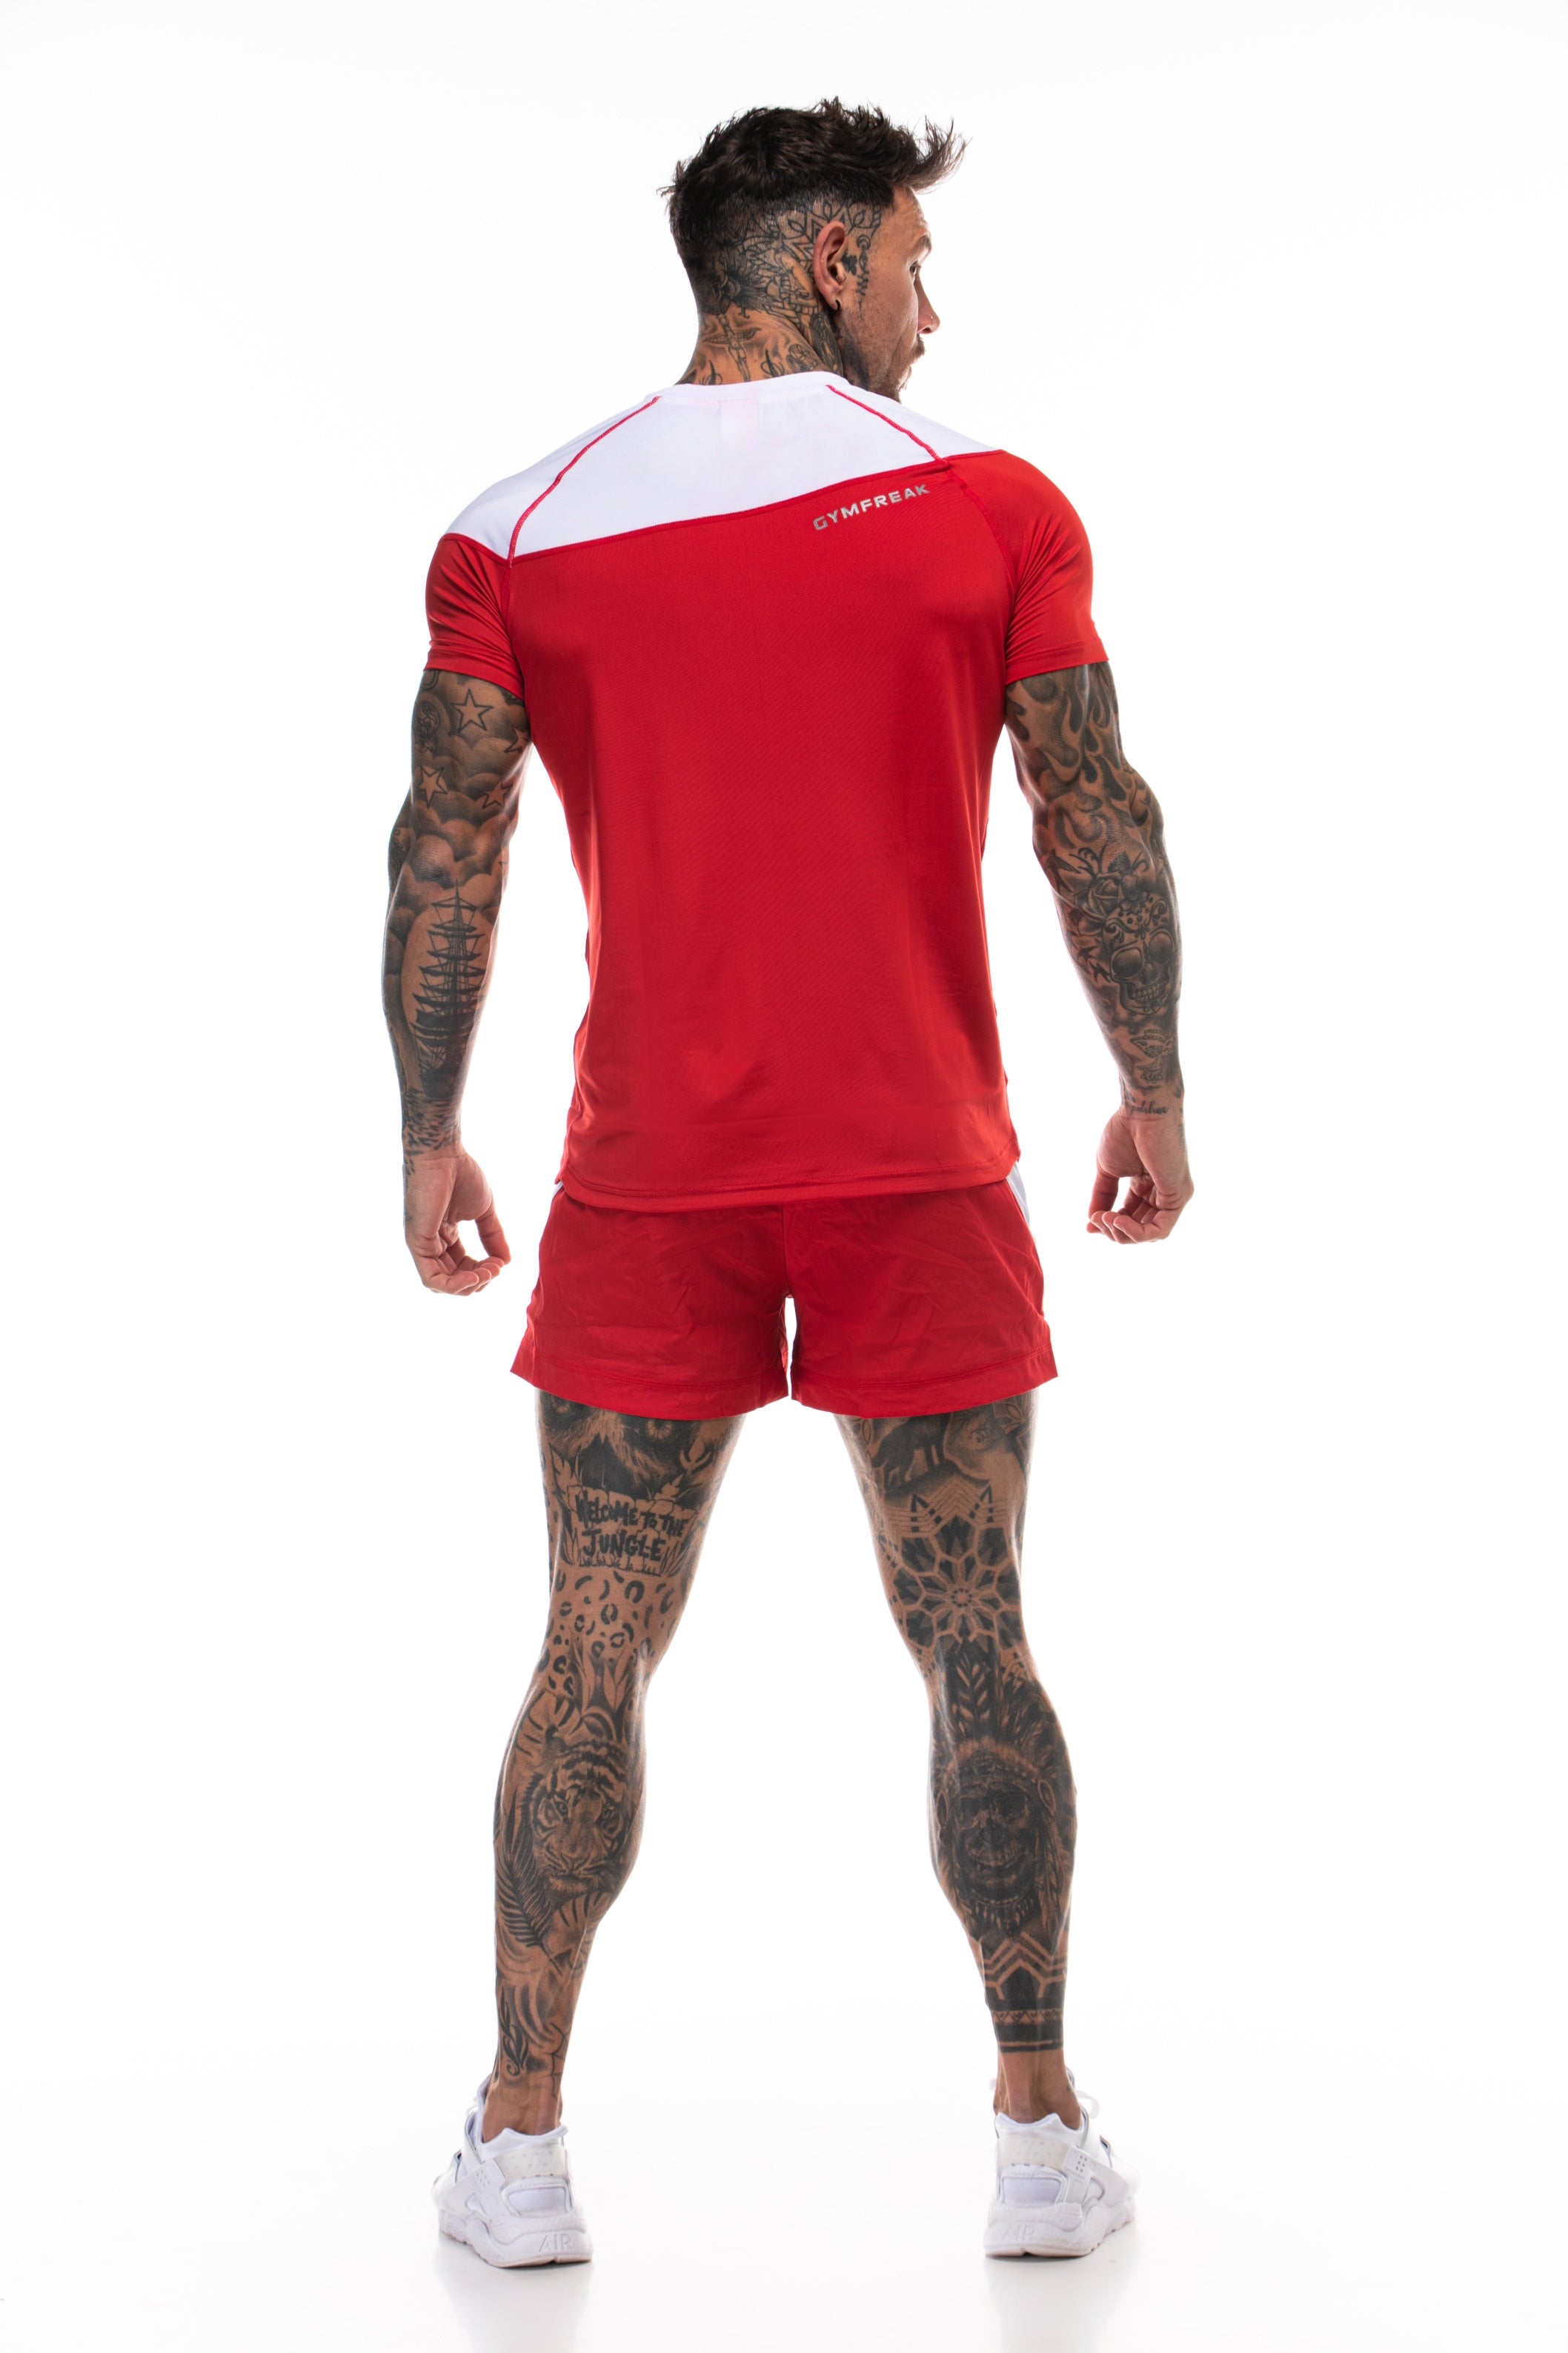 GymFreak Mens Pro T-Shirt - Red